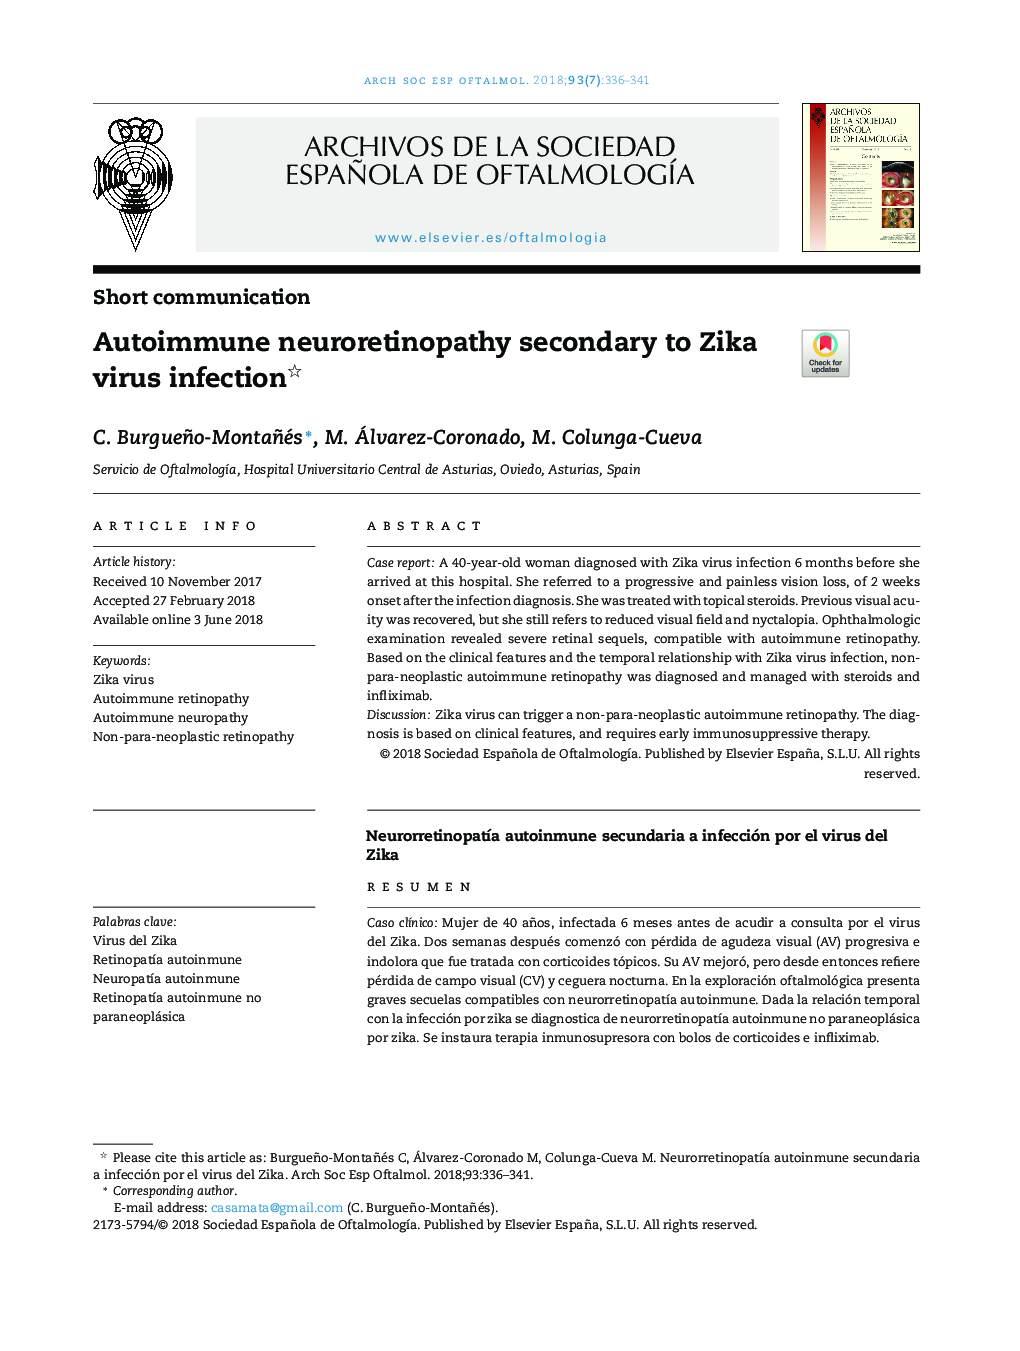 Autoimmune neuroretinopathy secondary to Zika virus infection